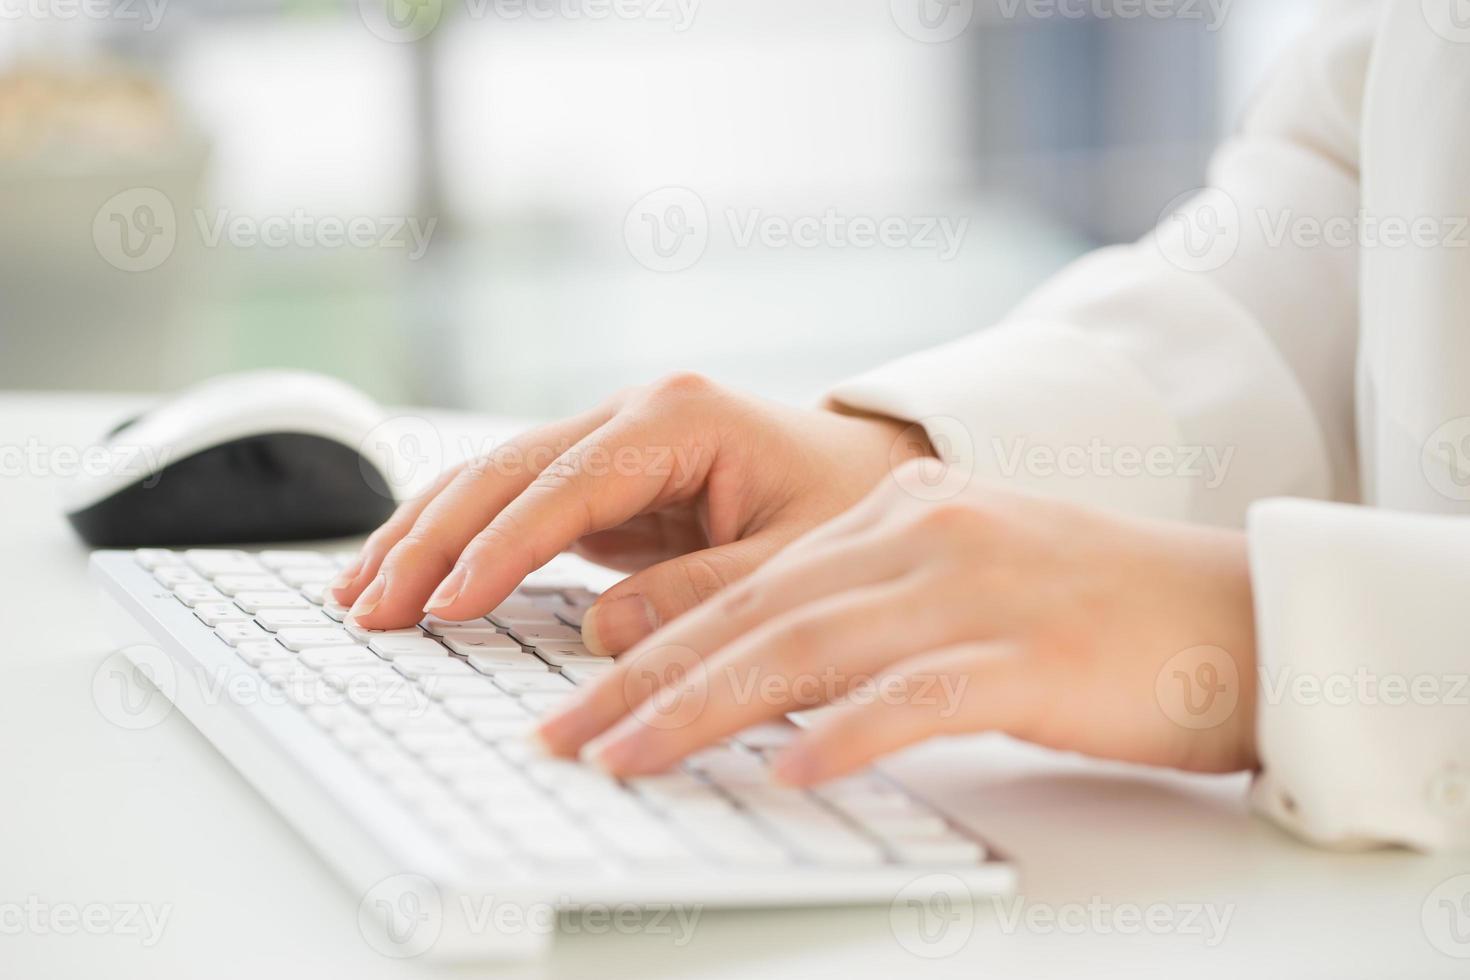 mains d'une femme de bureau clavier de frappe avec carte de crédit photo